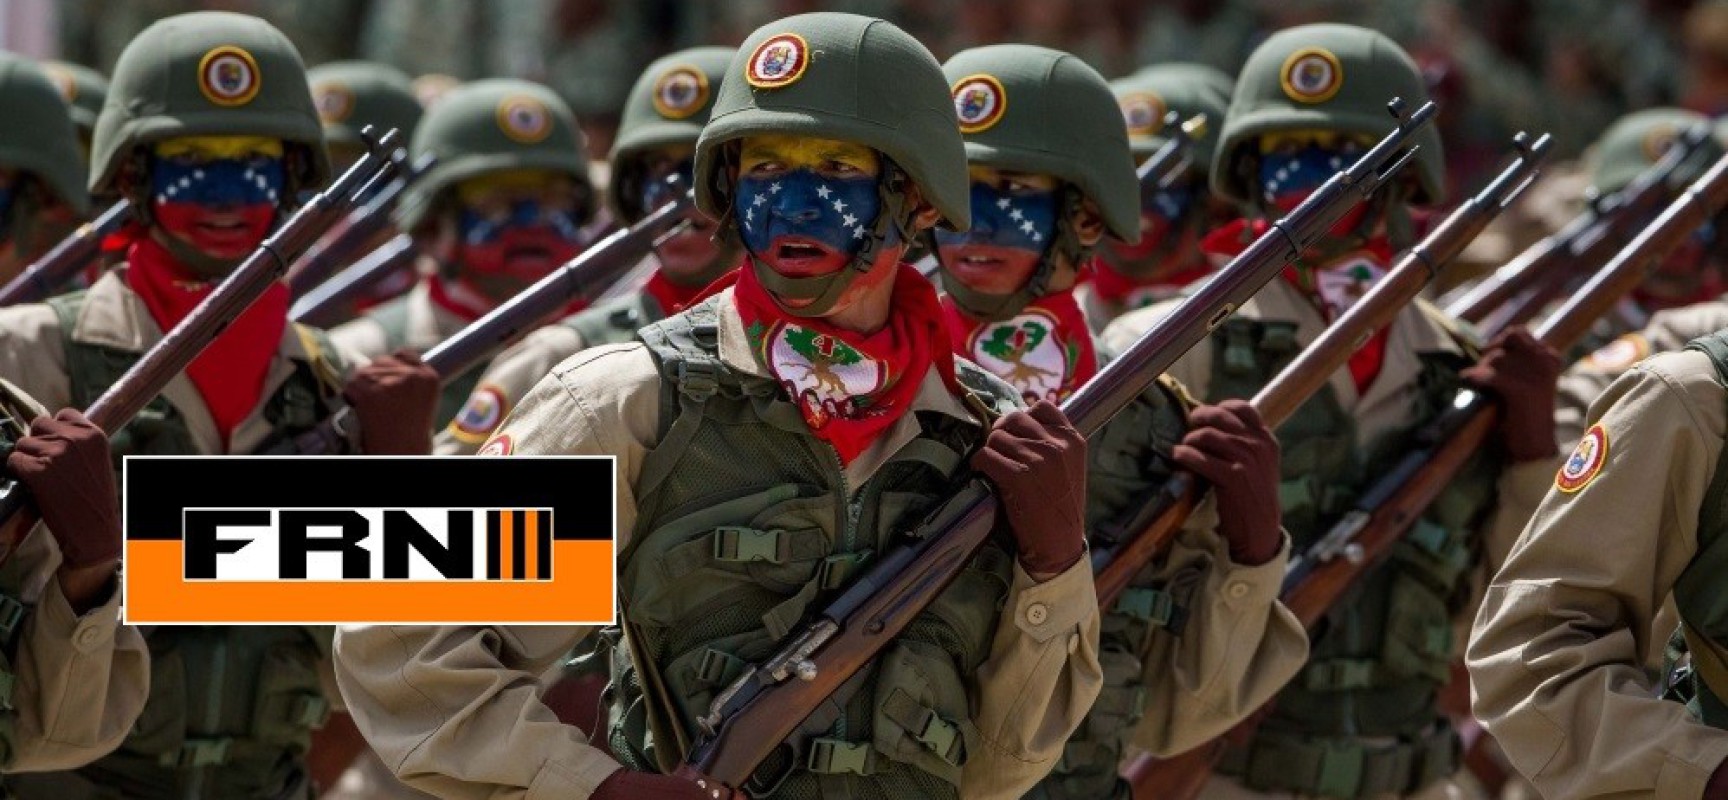 Voici les 5 principales raisons pour lesquelles la tentative de coup d’Etat au Venezuela est vouée à l’échec